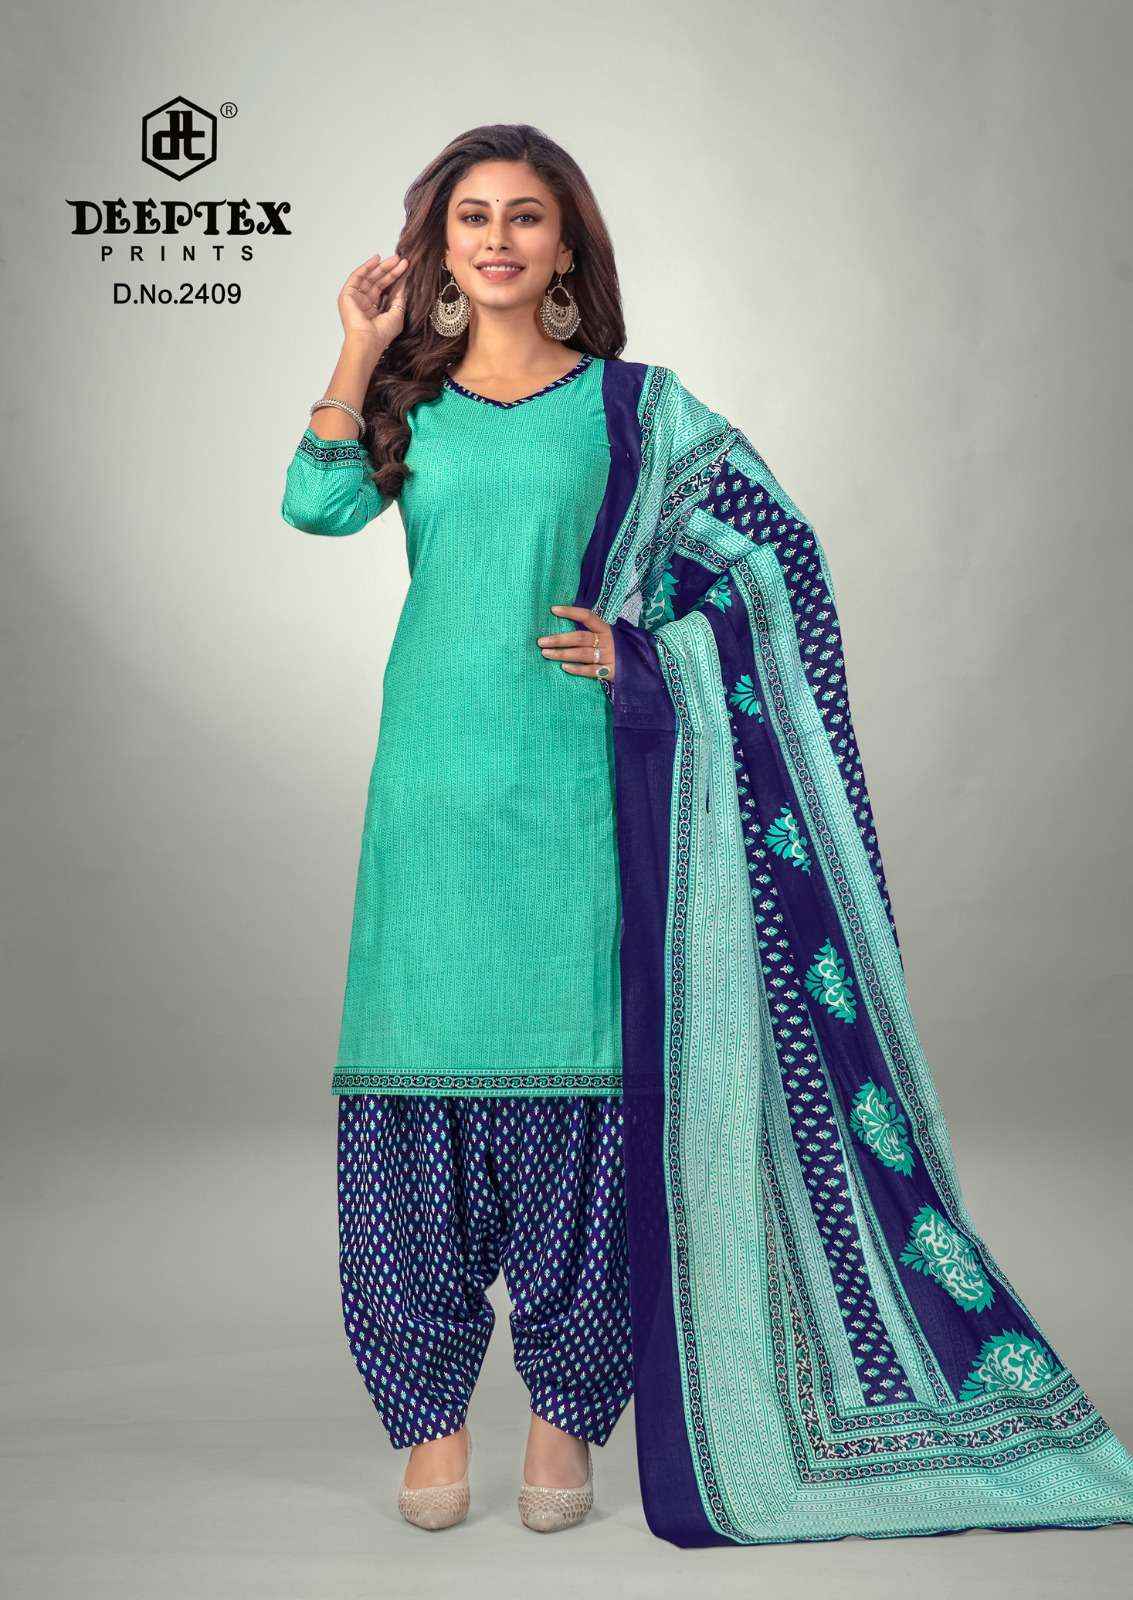 Deeptex Prints Pichkari Vol 24 Cotton Dress Material 10 pcs Catalogue